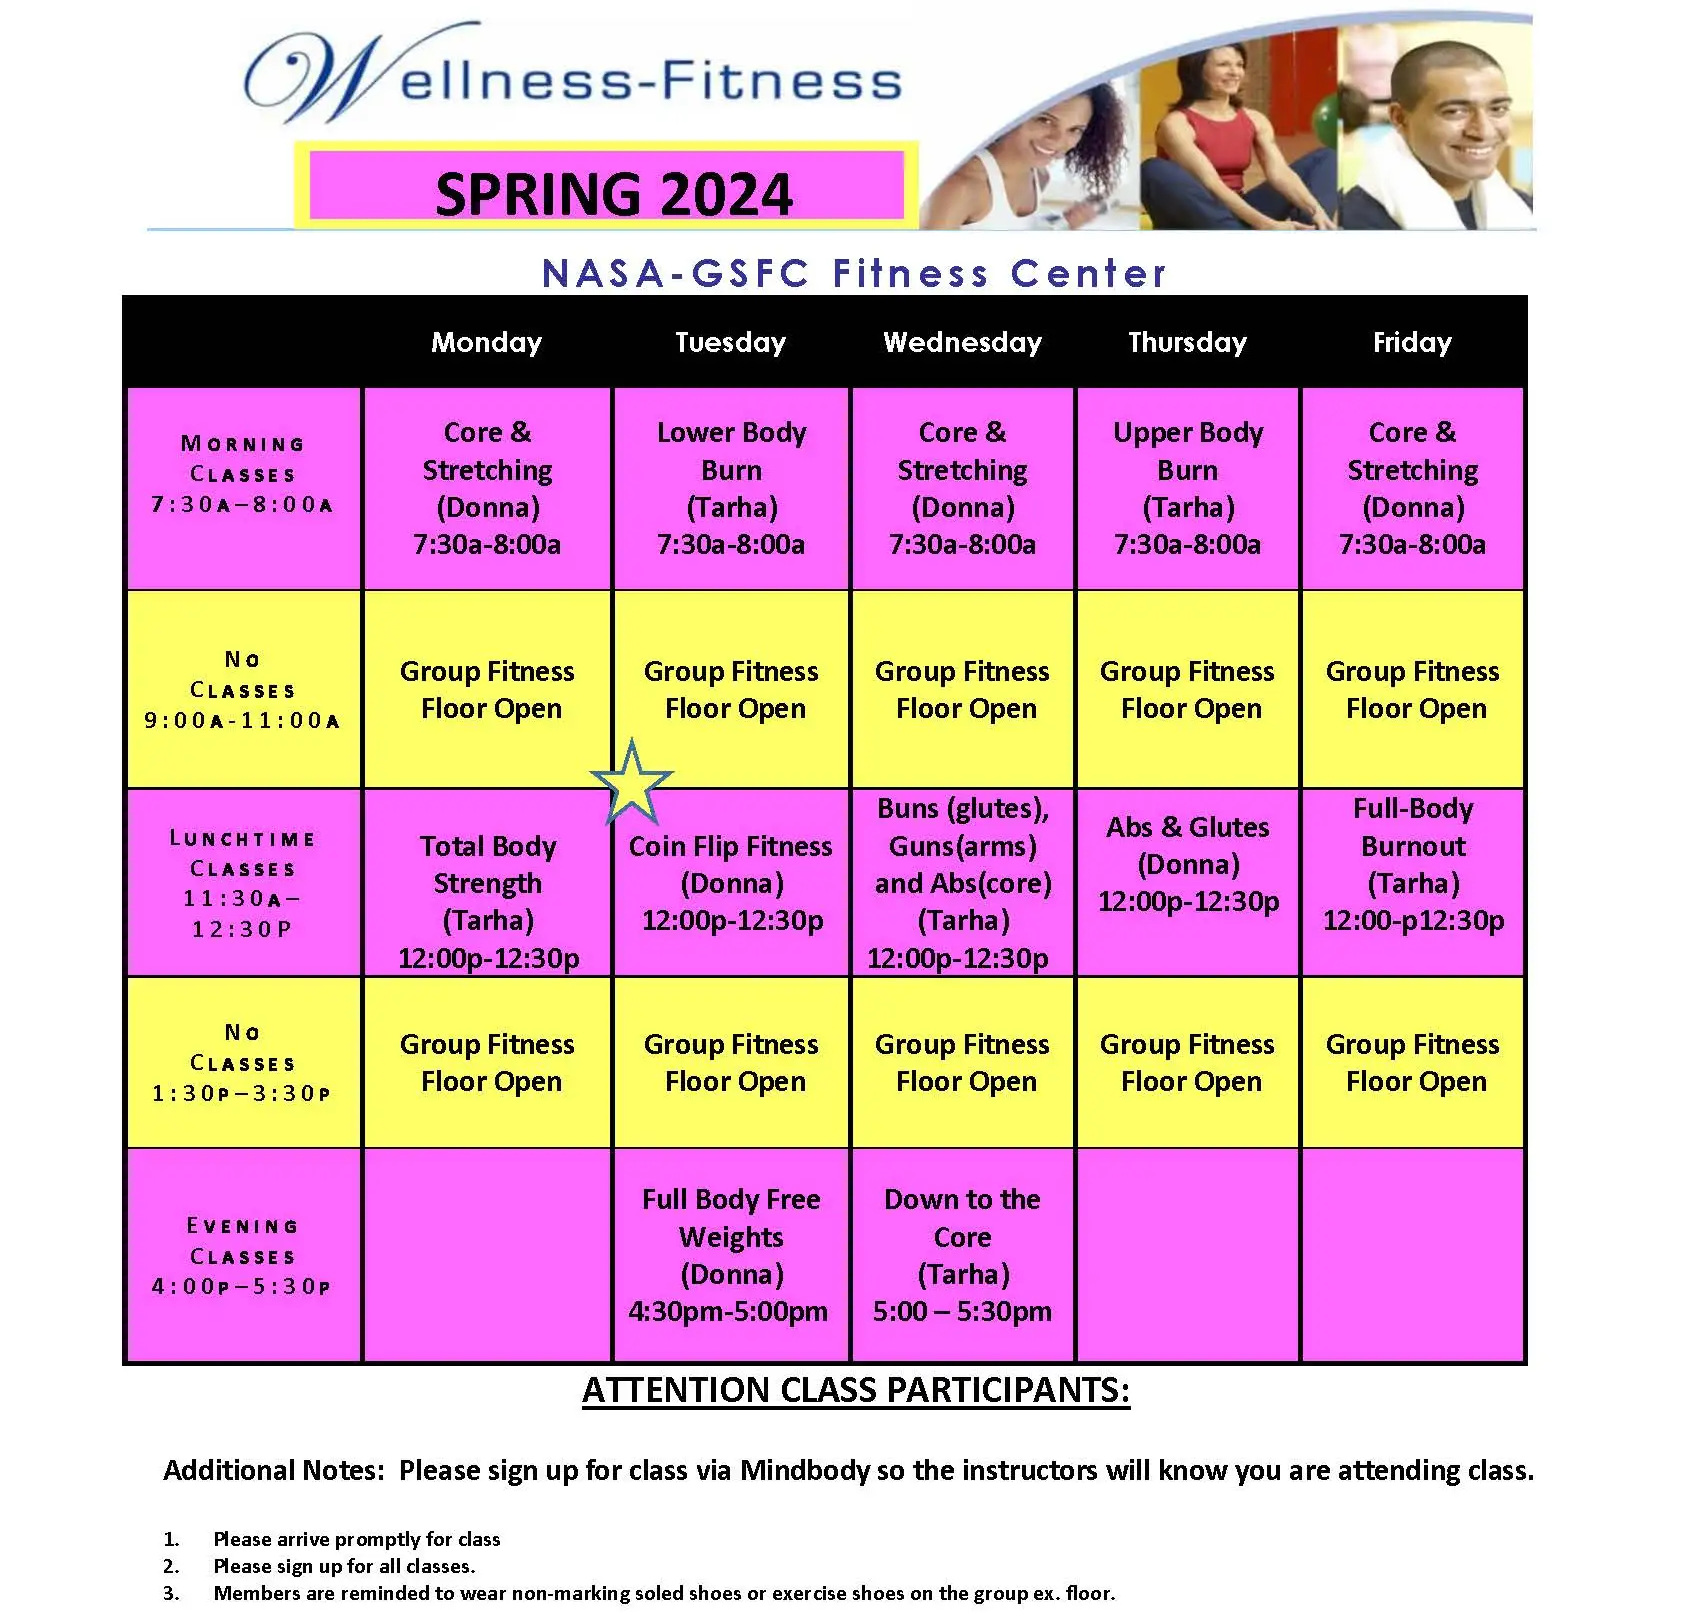 Goddard fitness center spring schedule